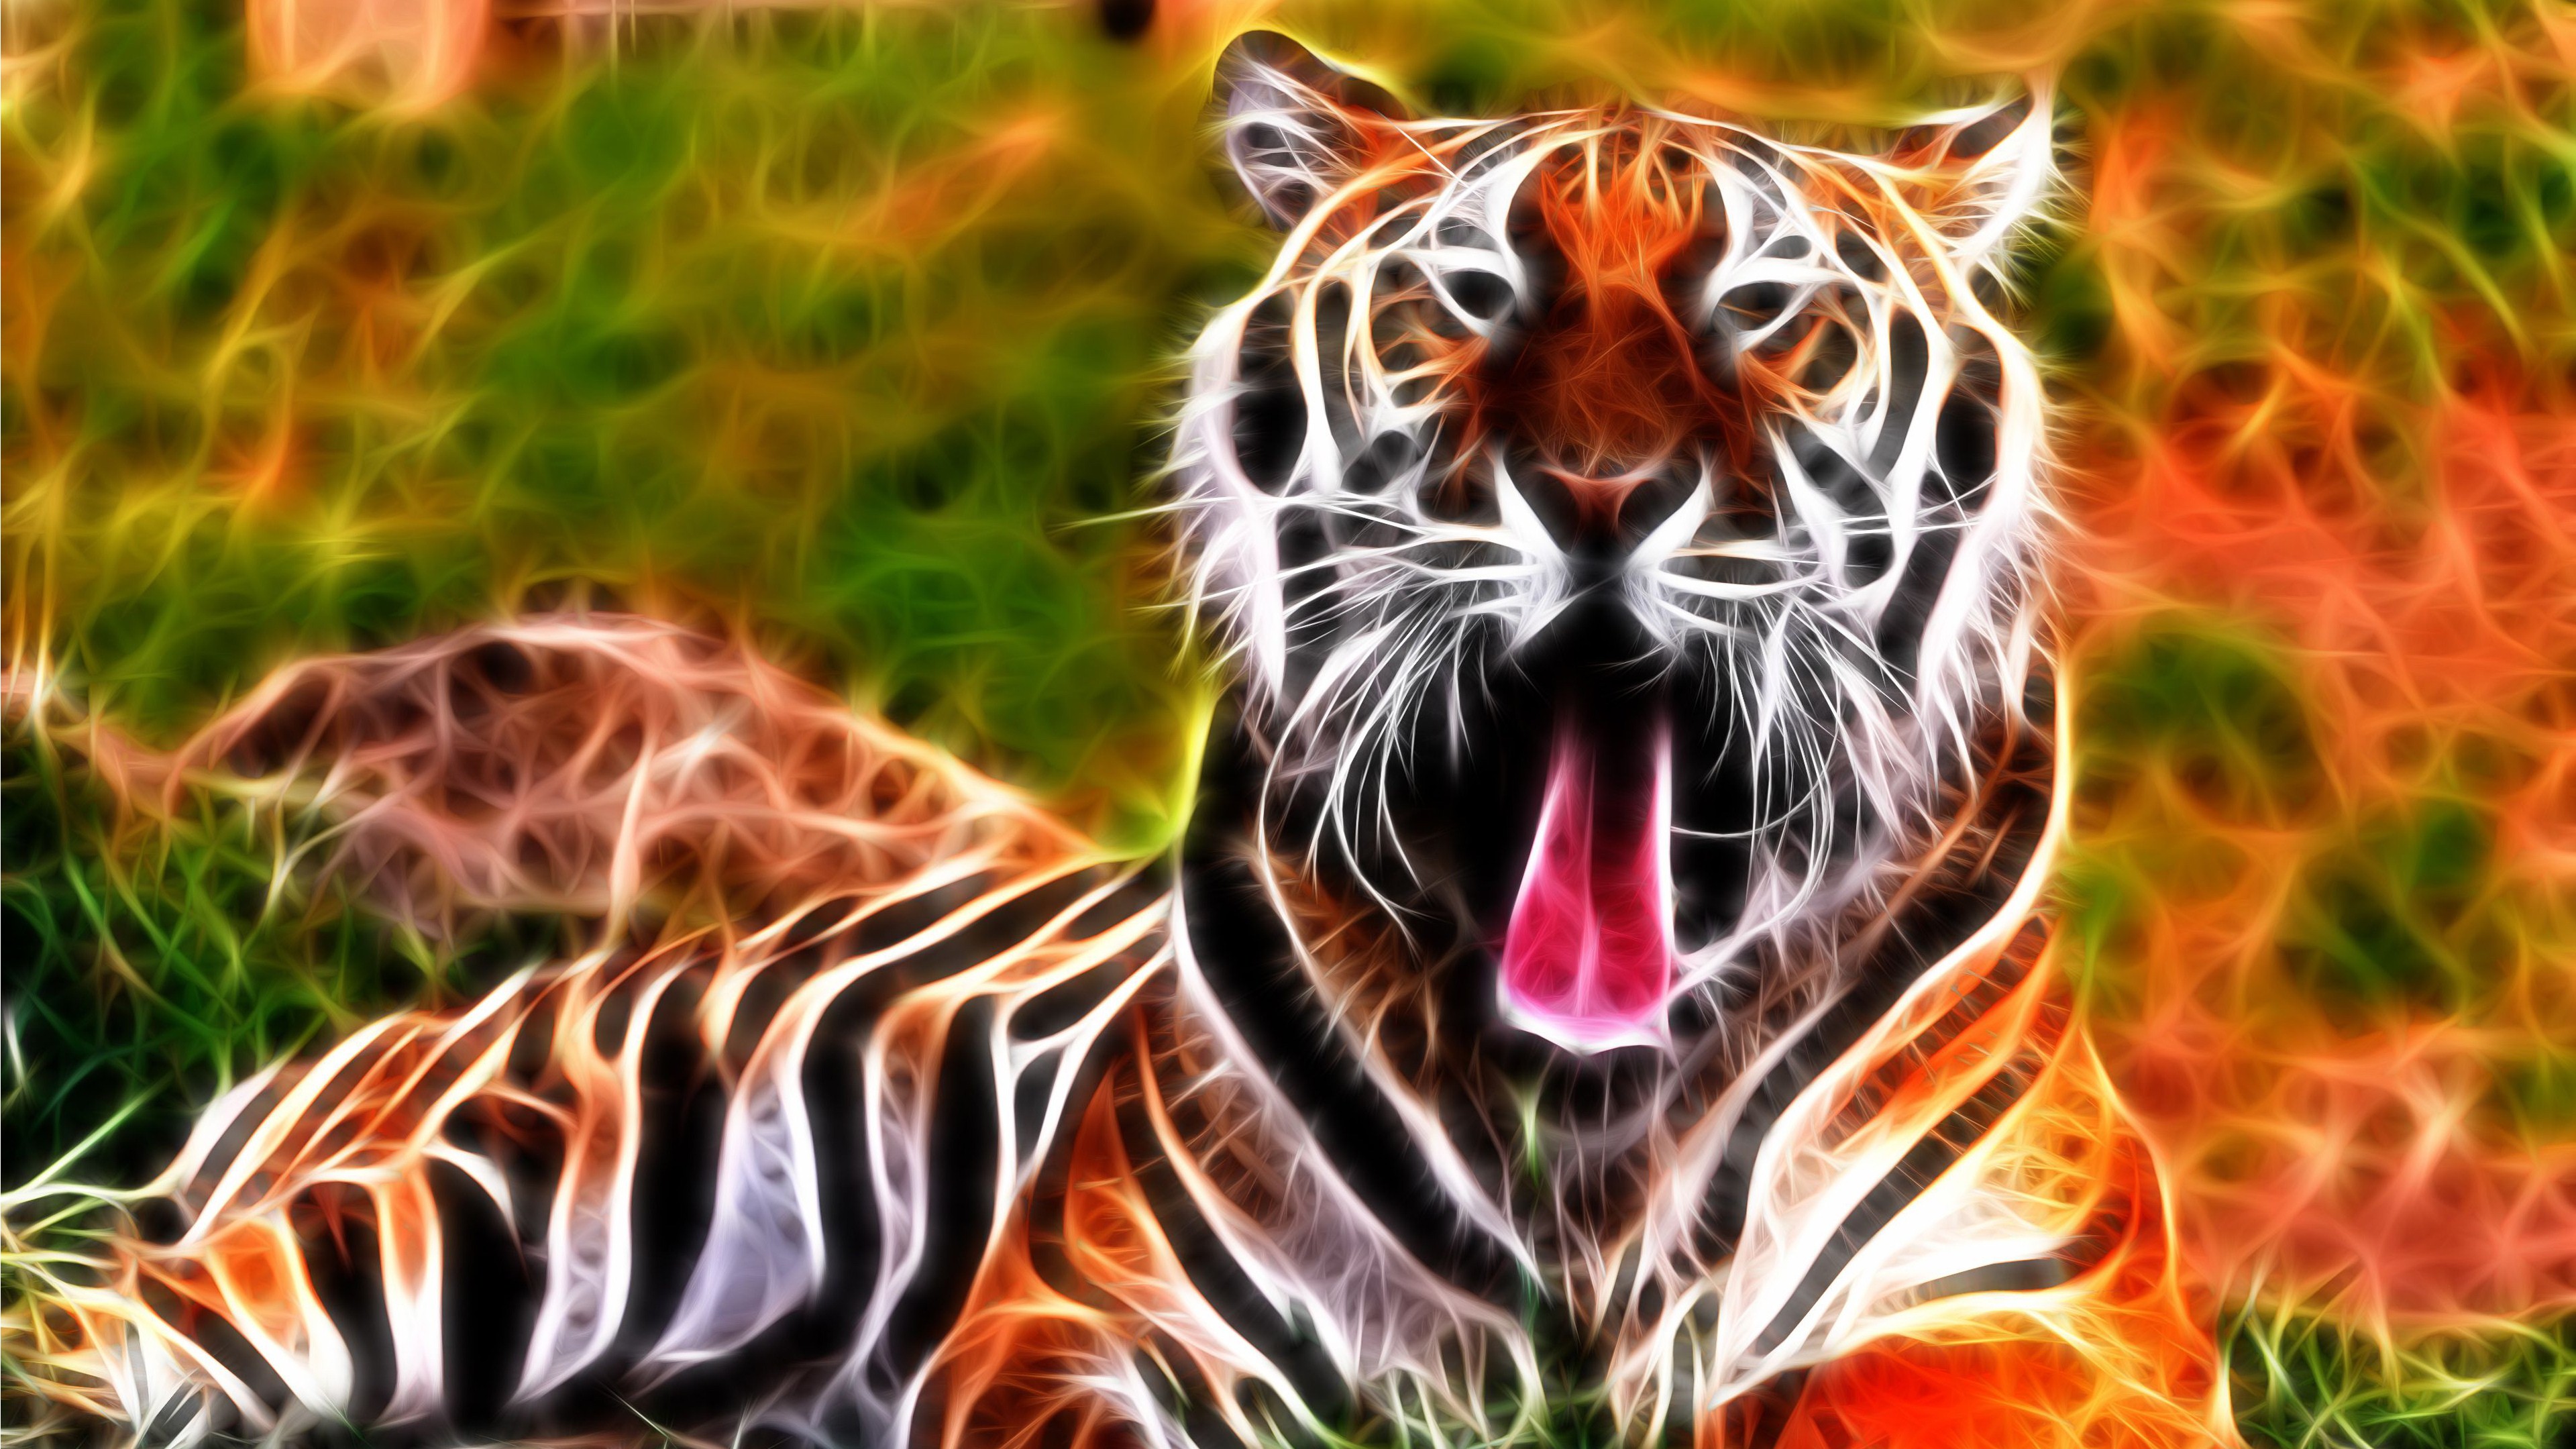 Tiger 4K Wallpapers  Latest Tiger 4K Backgrounds  WallpaperTeg